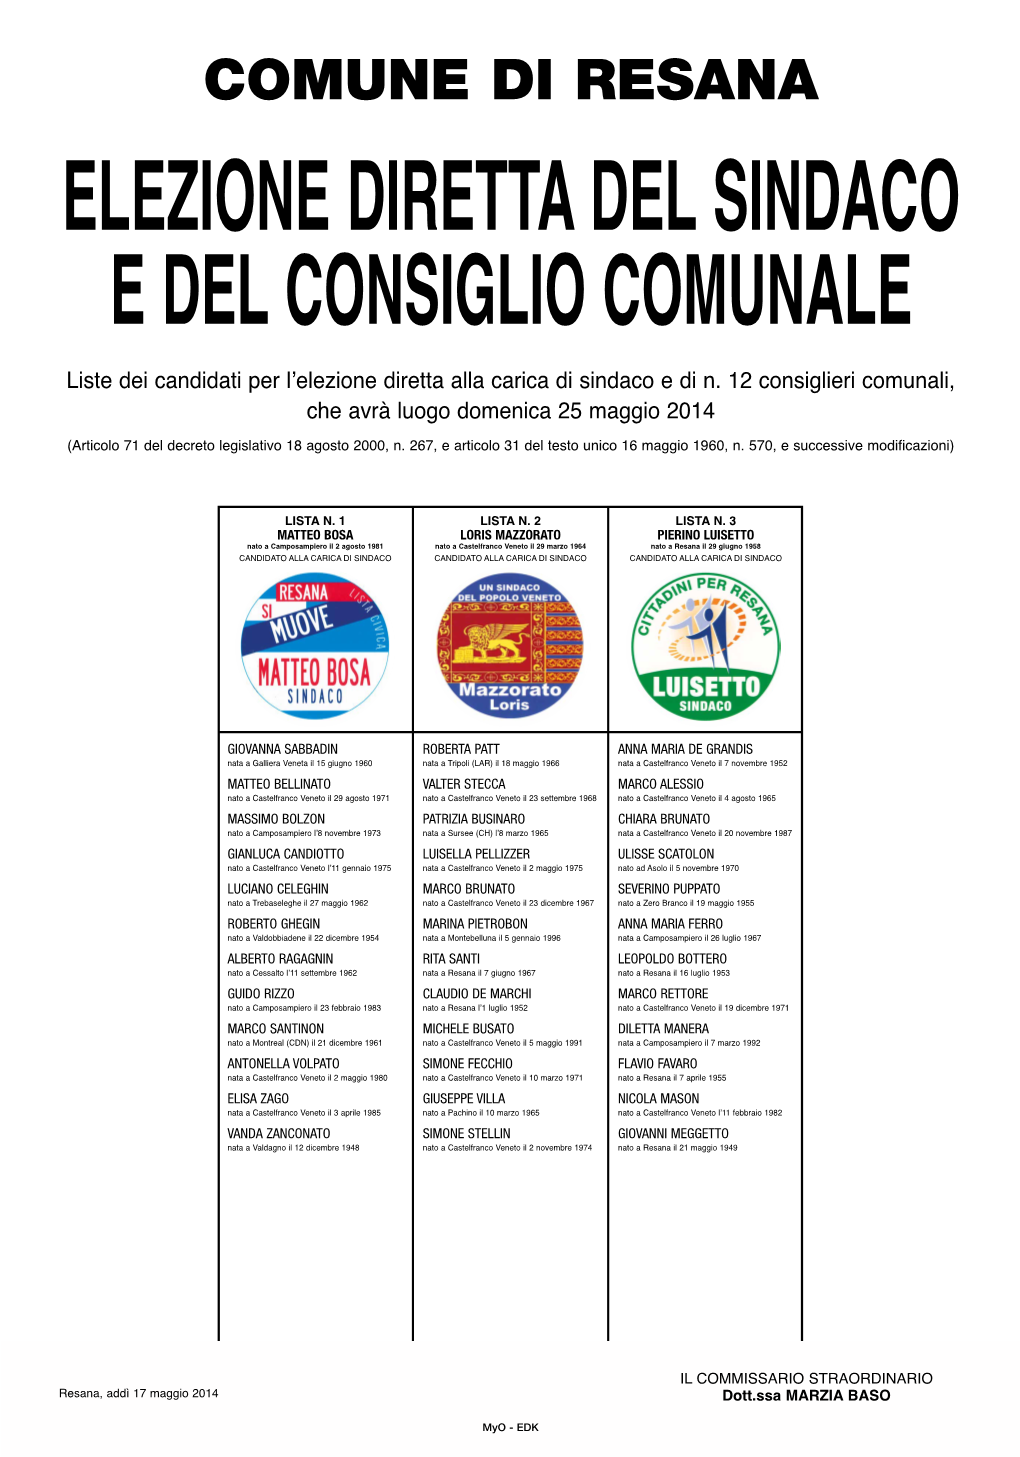 Liste Dei Candidati Per L'elezione Diretta Alla Carica Di Sindaco E Di N. 12 Consiglieri Comunali, Che Avrà Luogo Domenica 25